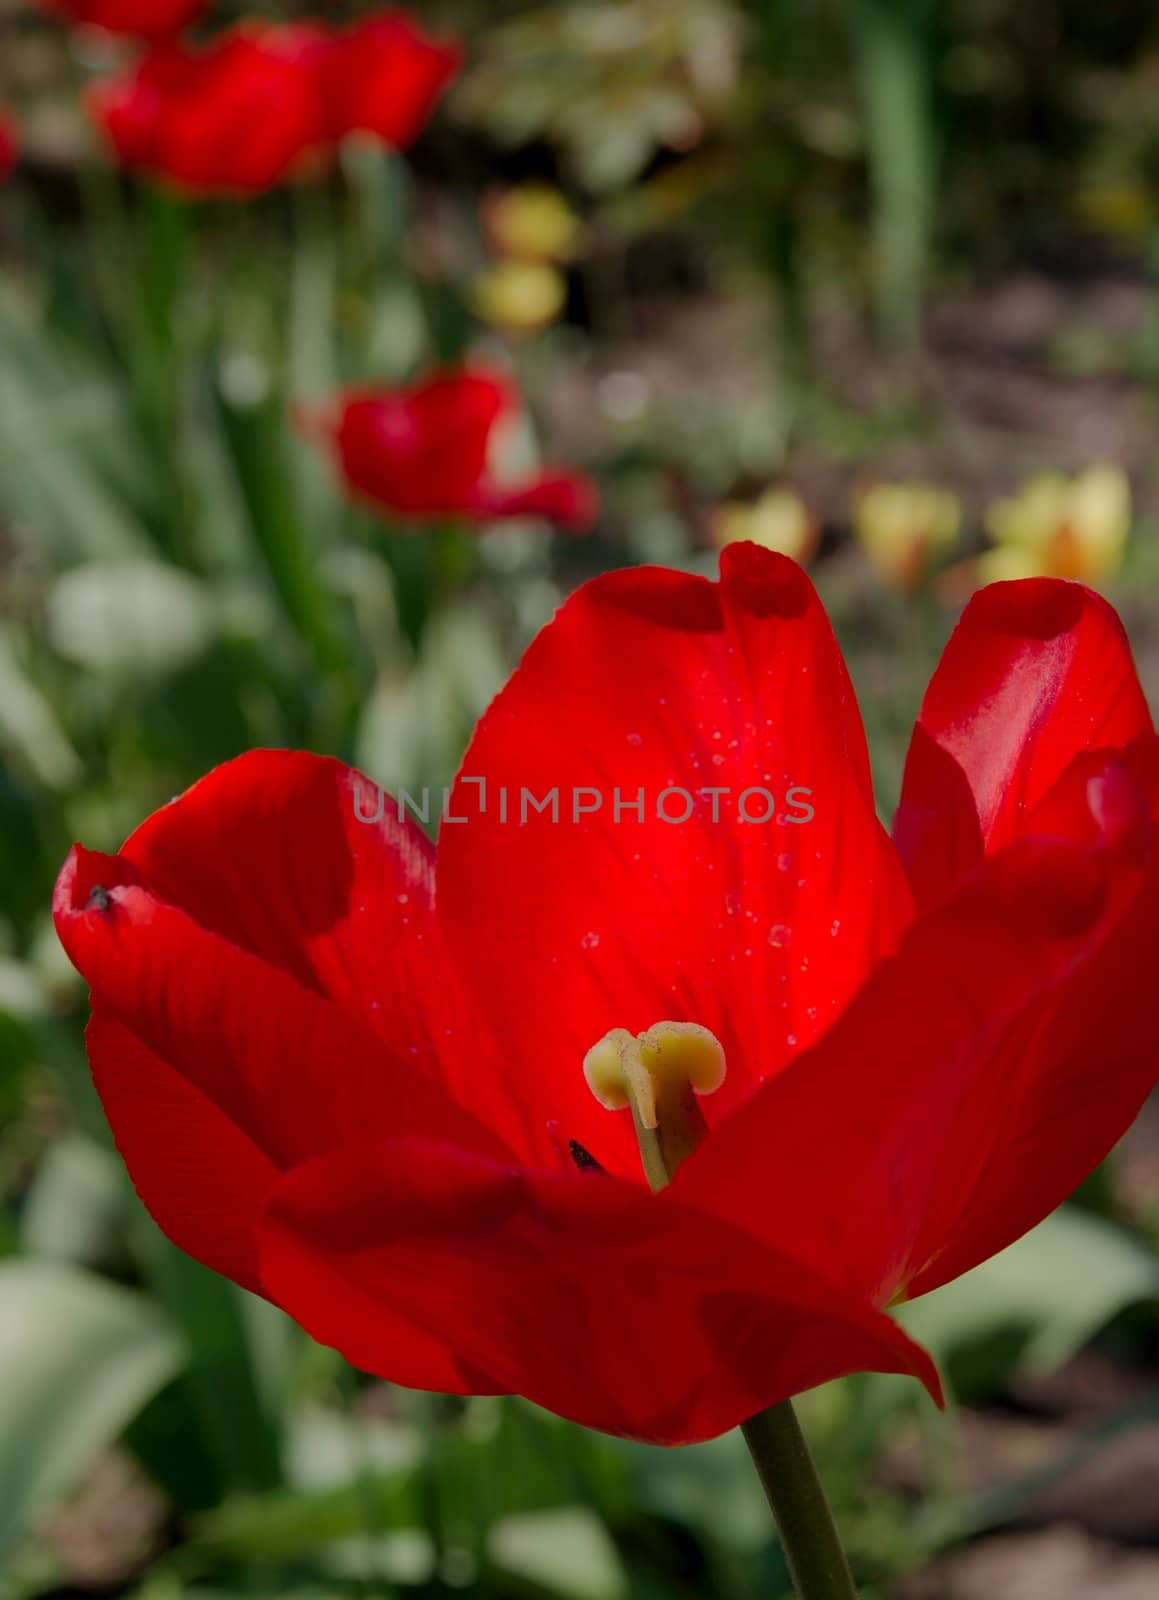 Red tulip in a garden